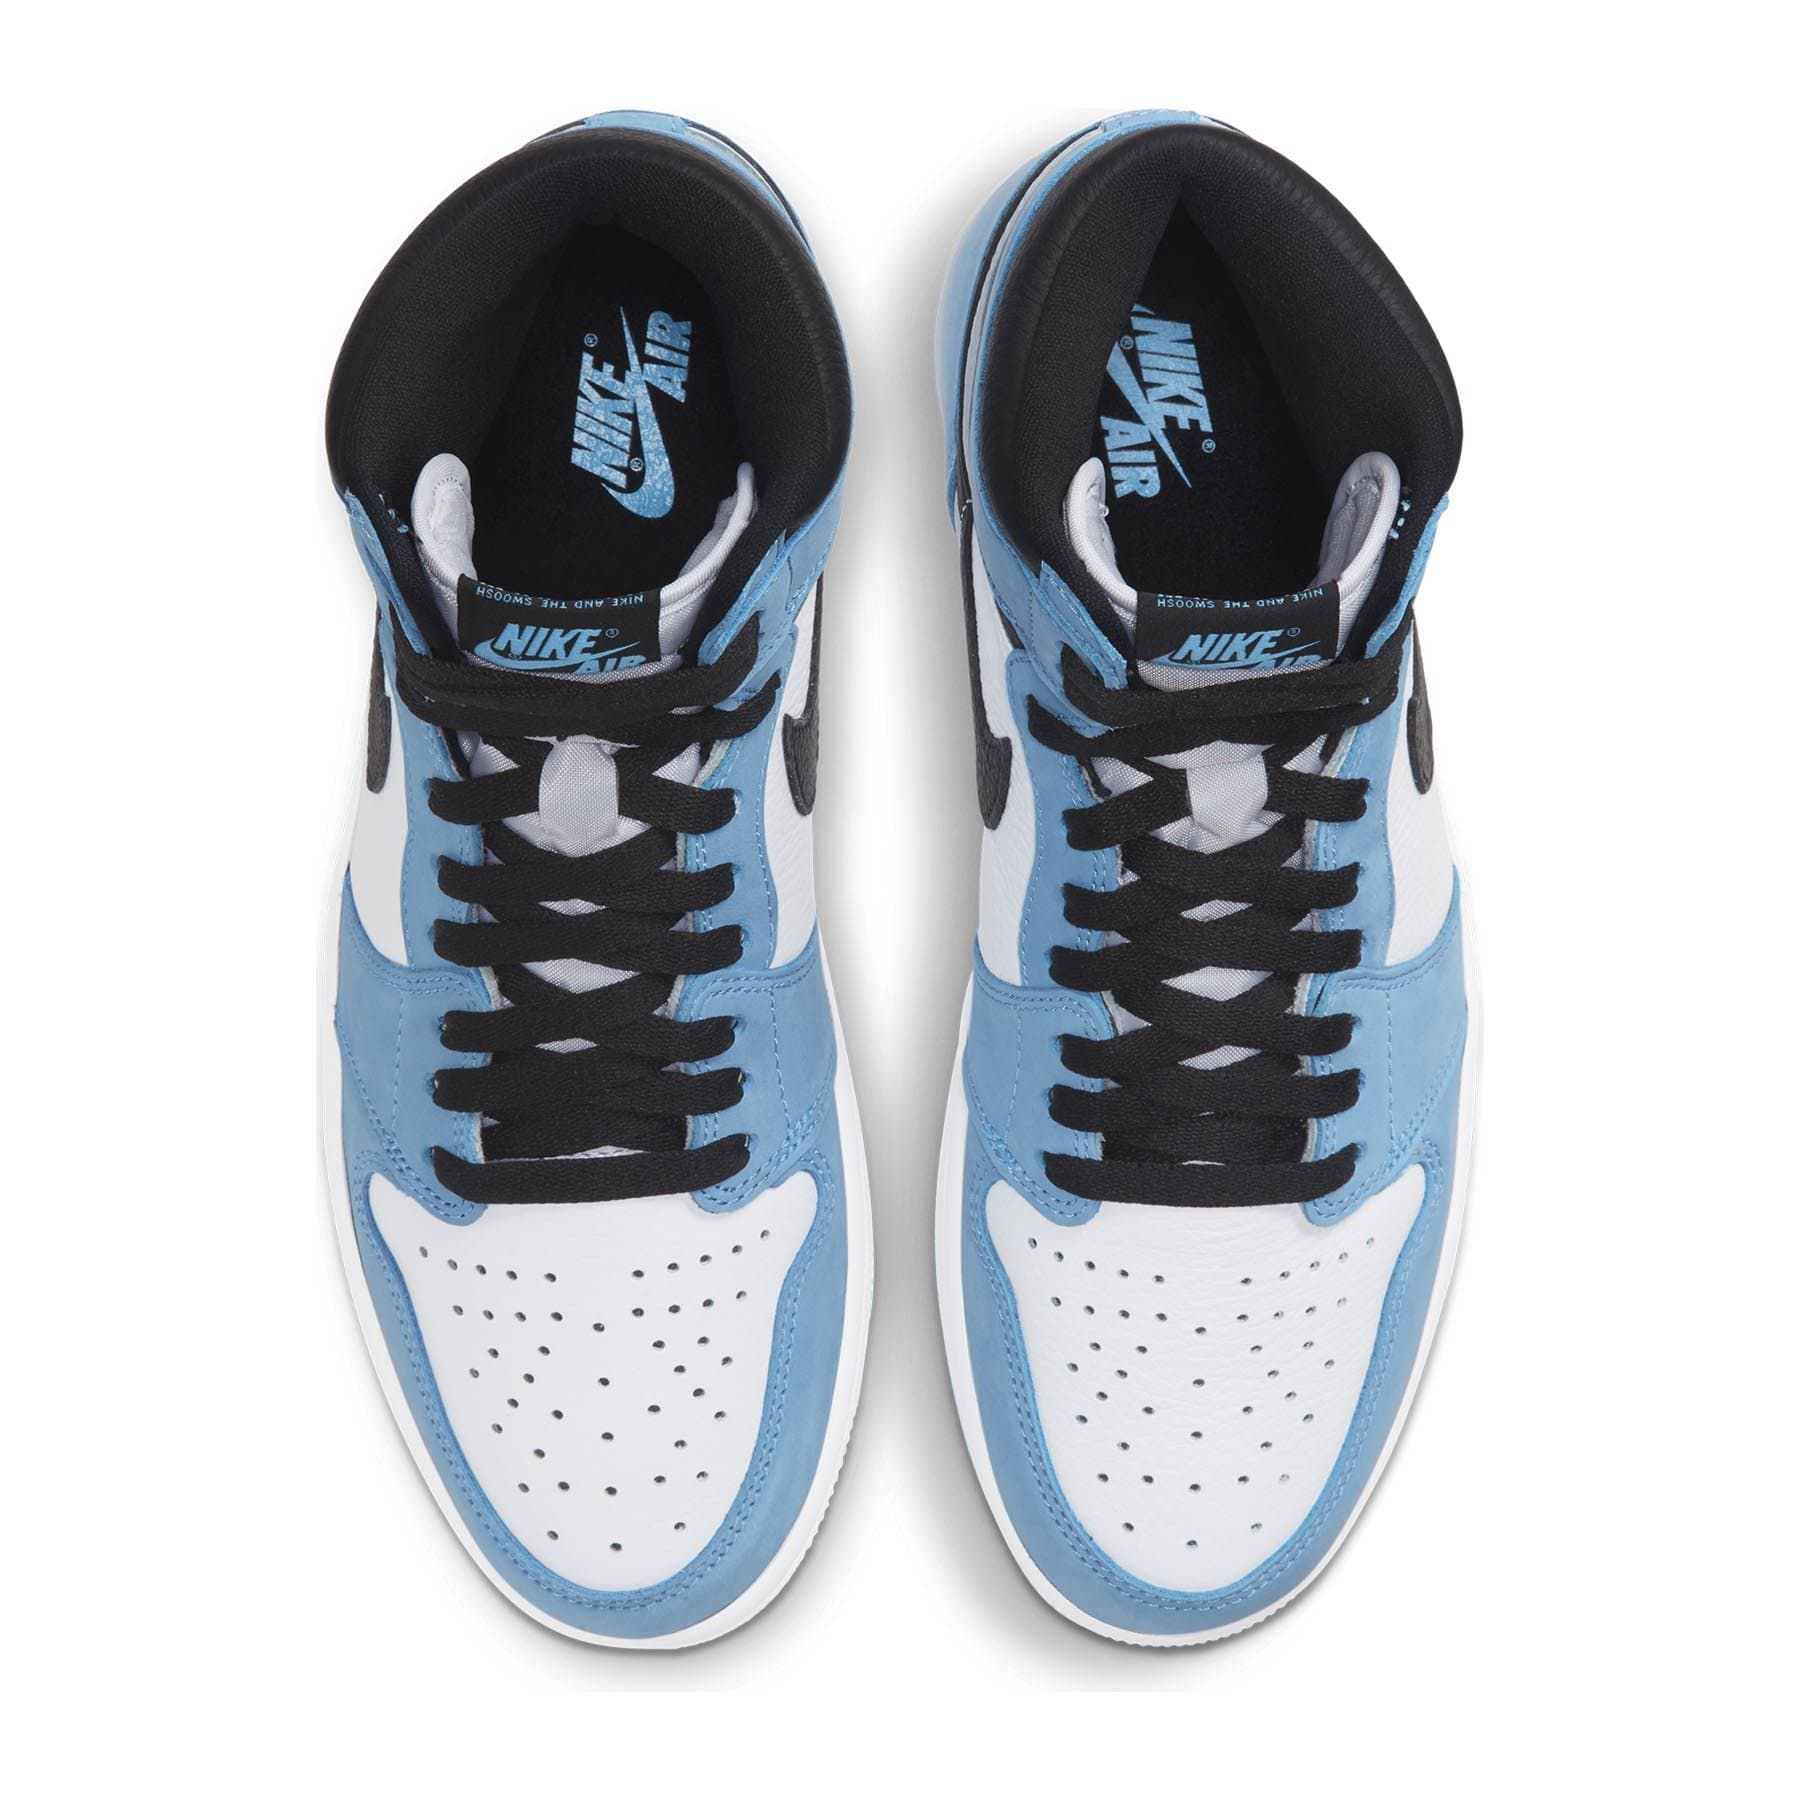 Nike Air Jordan 1 Retro High “University Blue”